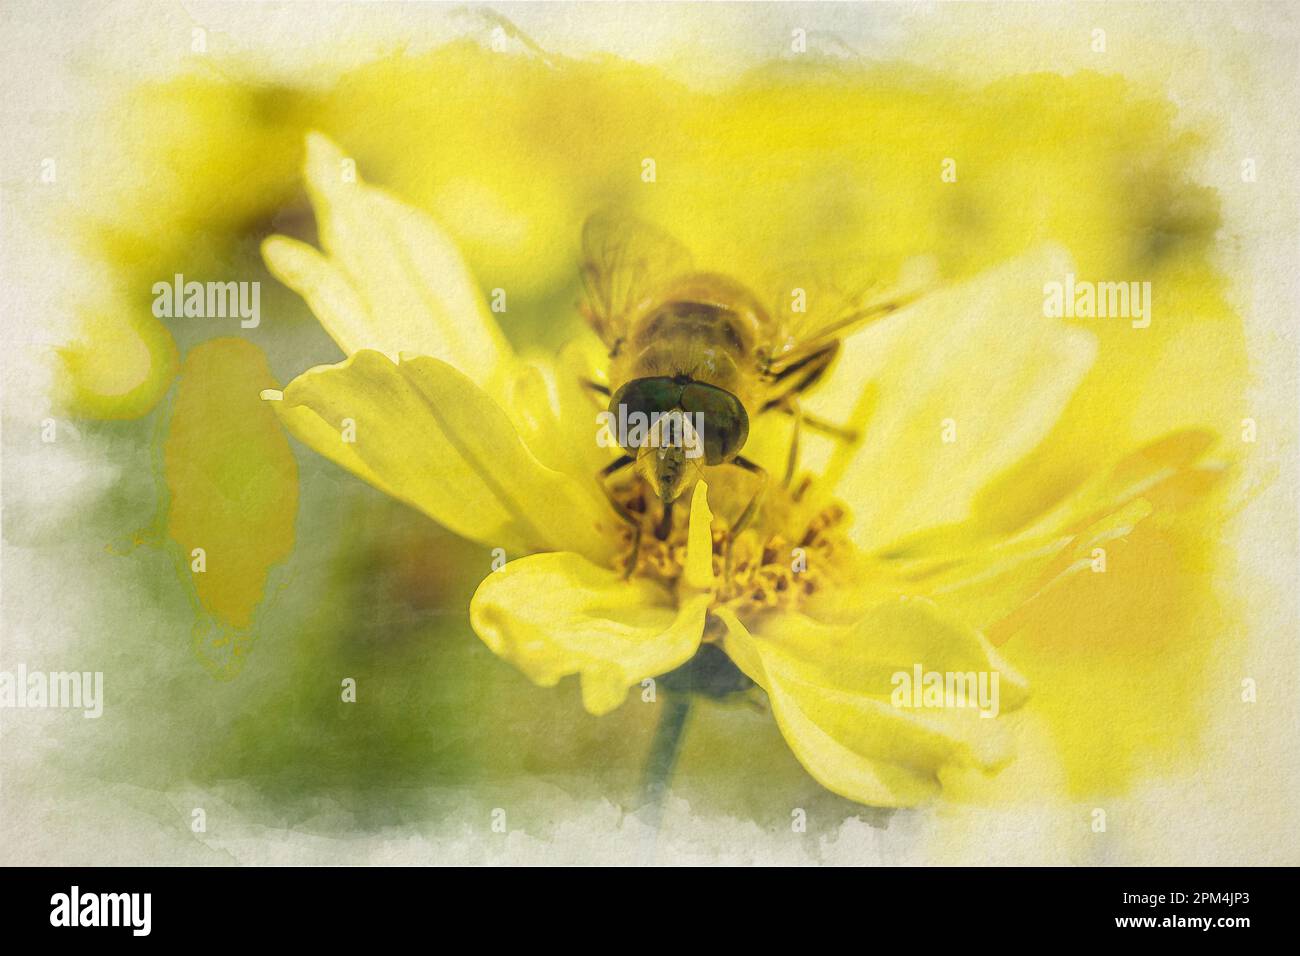 Gros plan d'une abeille, ou Honeybee. APIS mellifera peinture numérique aquarelle collectant le pollen d'une fleur de jardin jaune en été. Banque D'Images